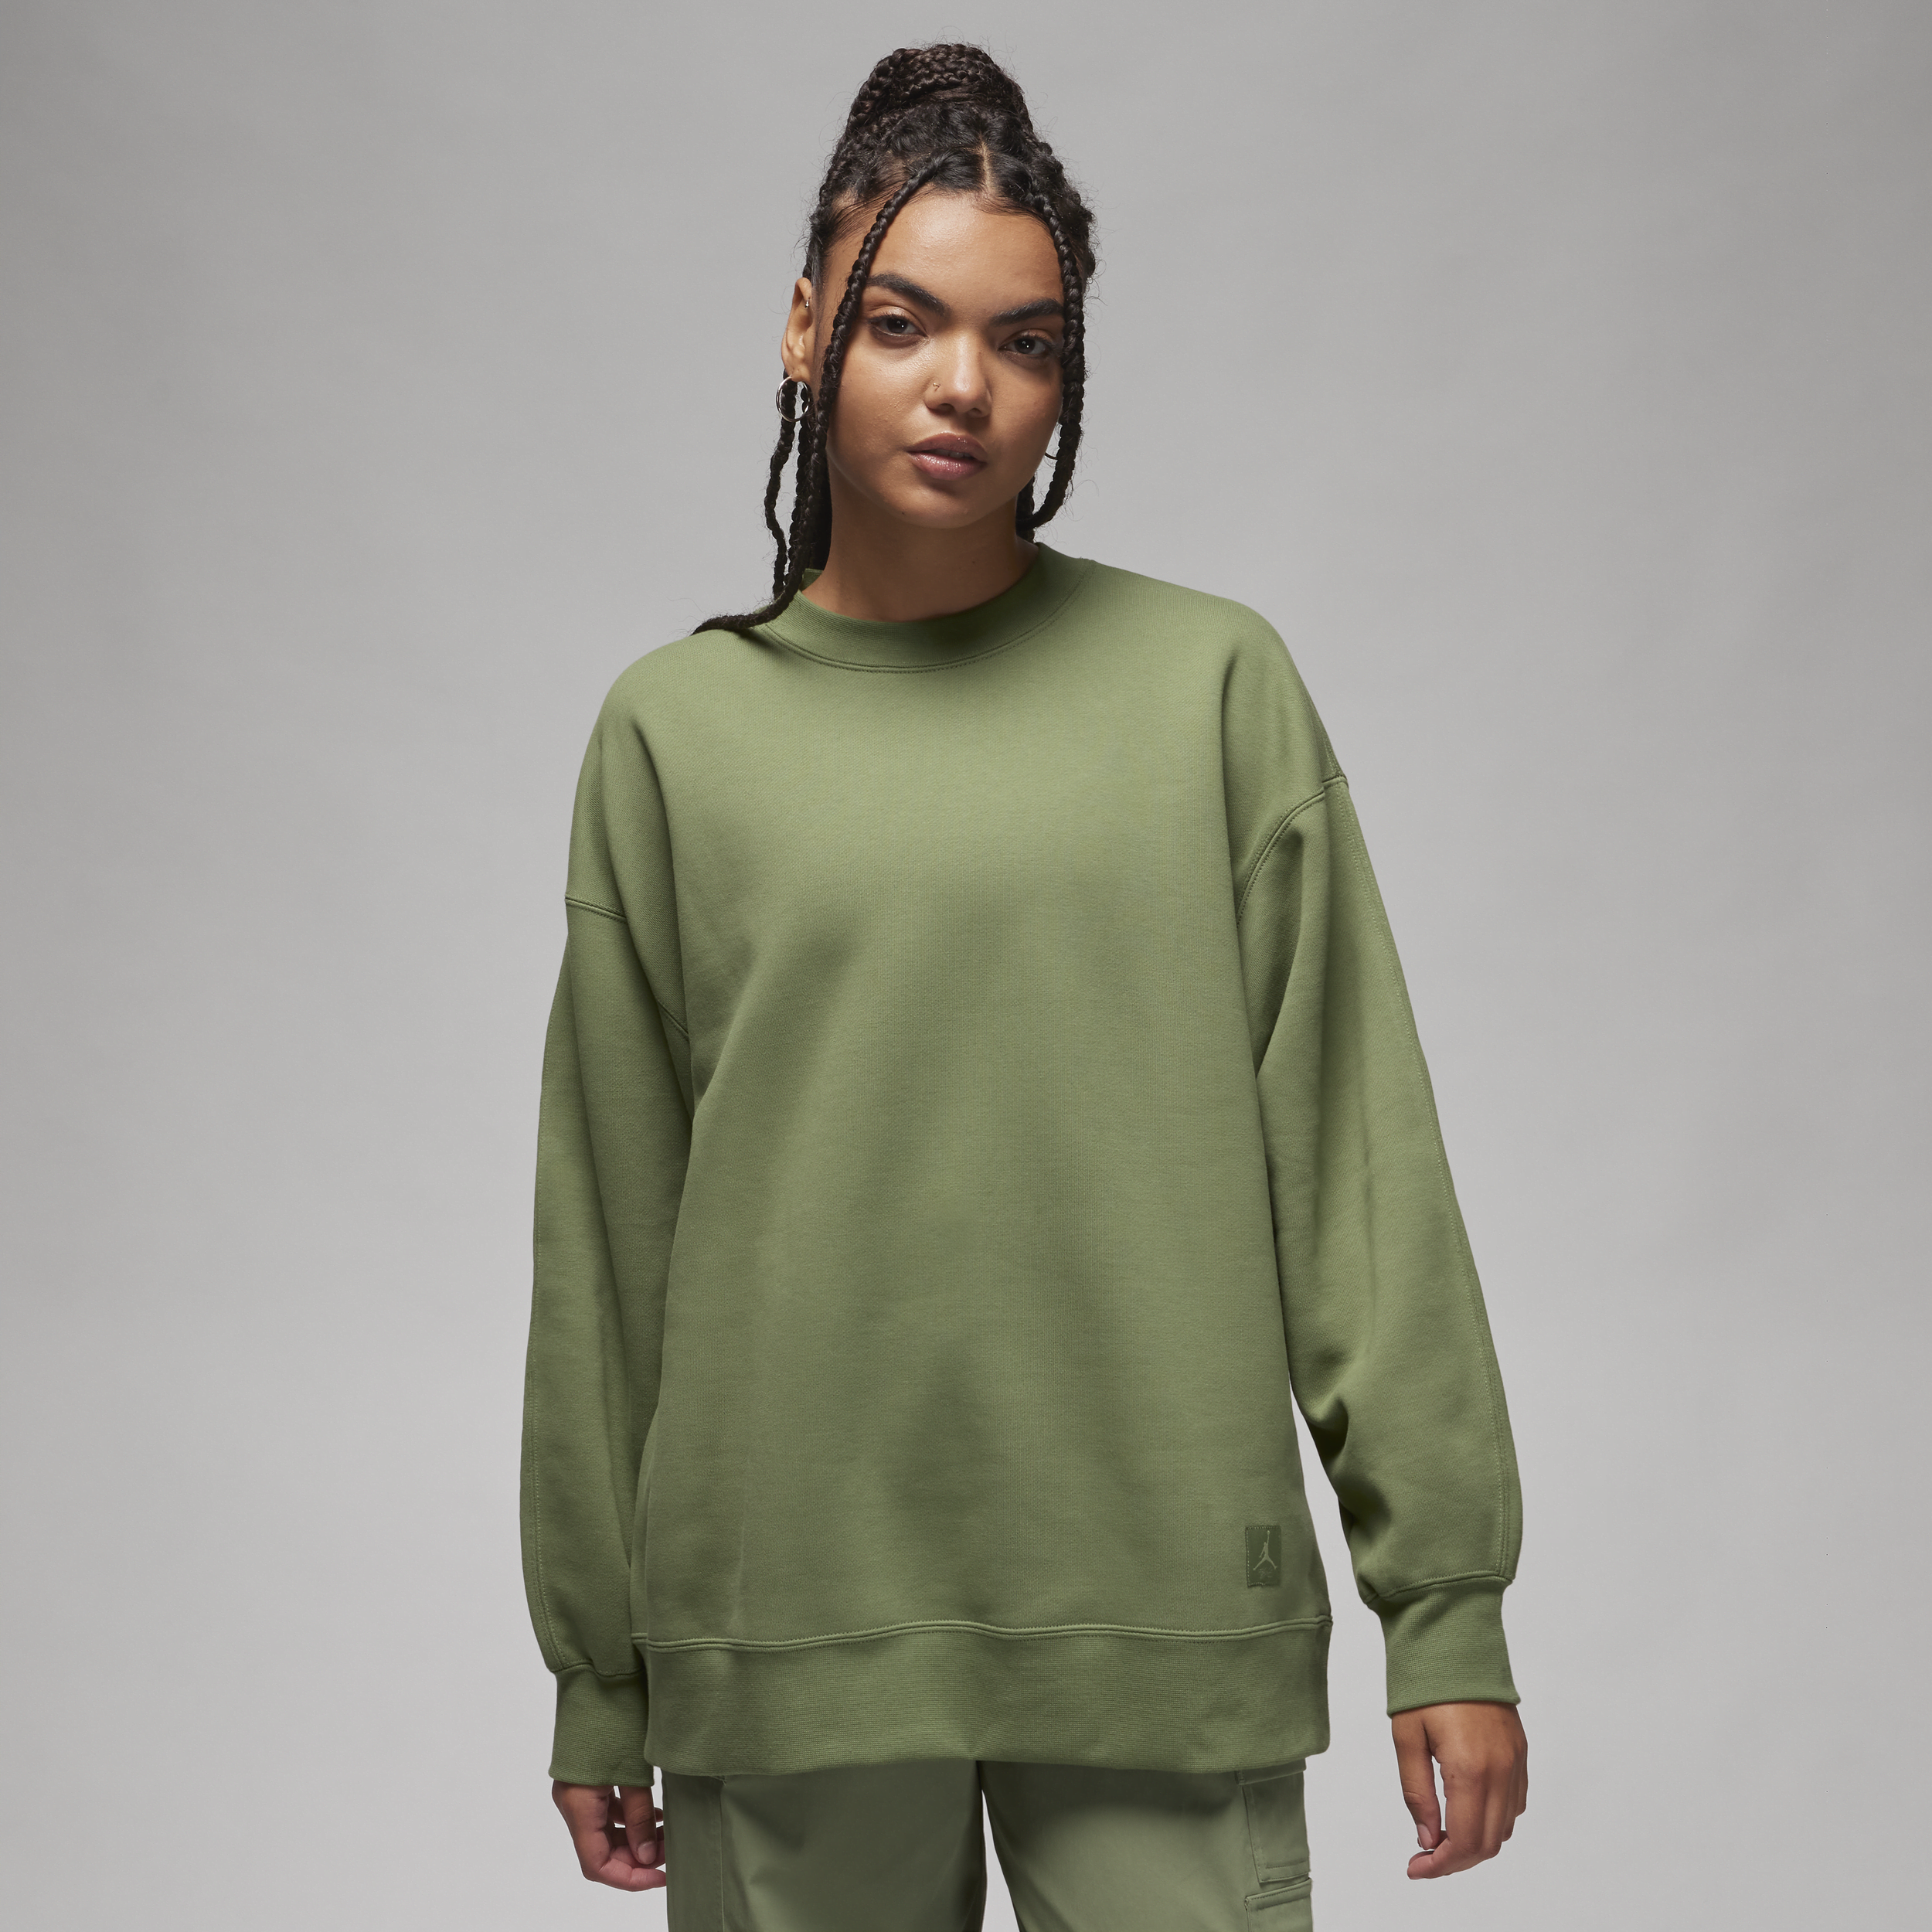 Jordan Flight-sweatshirt i fleece med rund hals til kvinder - grøn